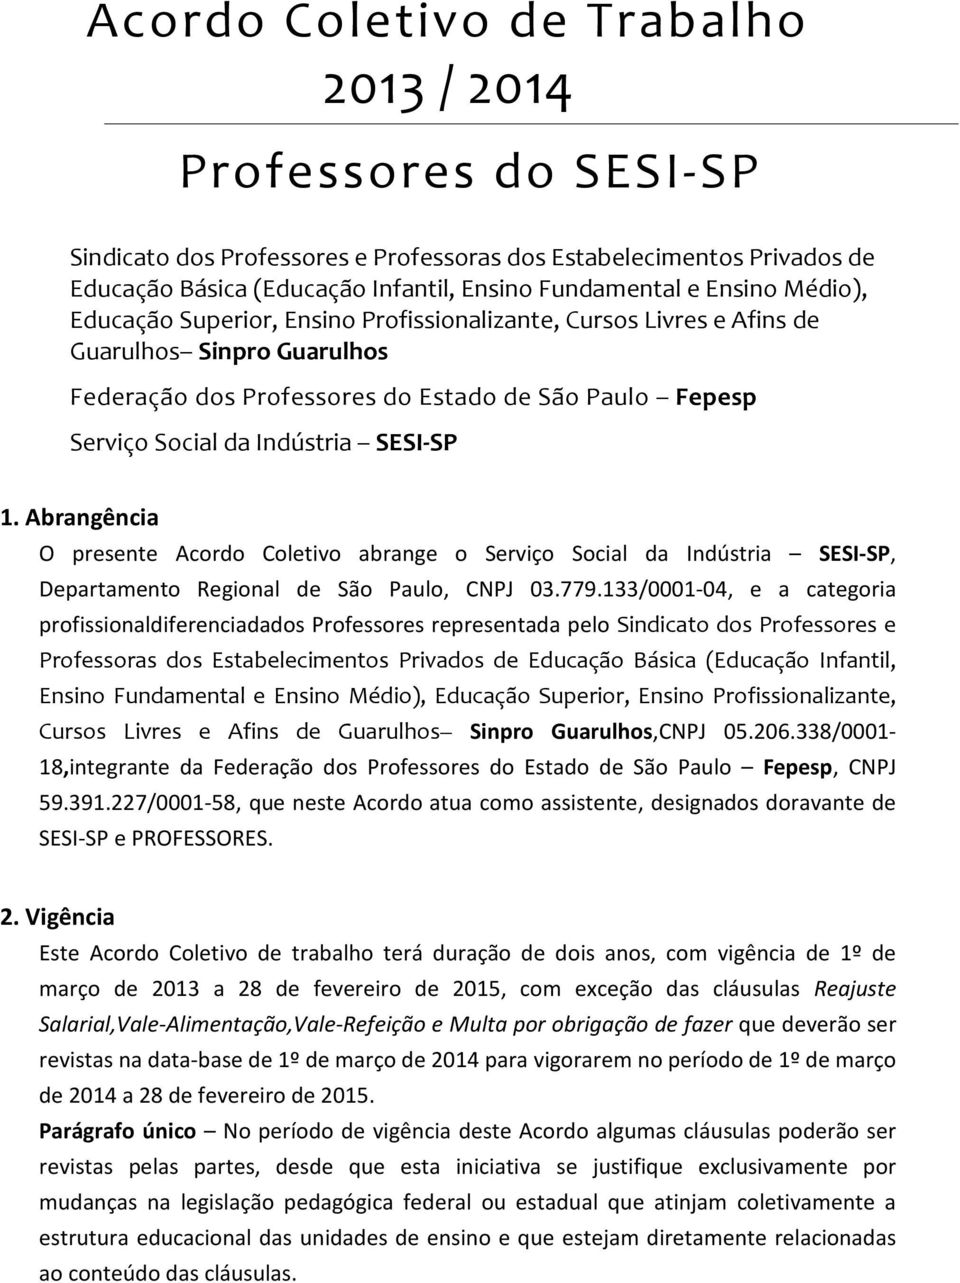 Abrangência O presente Acordo Coletivo abrange o Serviço Social da Indústria SESI-SP, Departamento Regional de São Paulo, CNPJ 03.779.